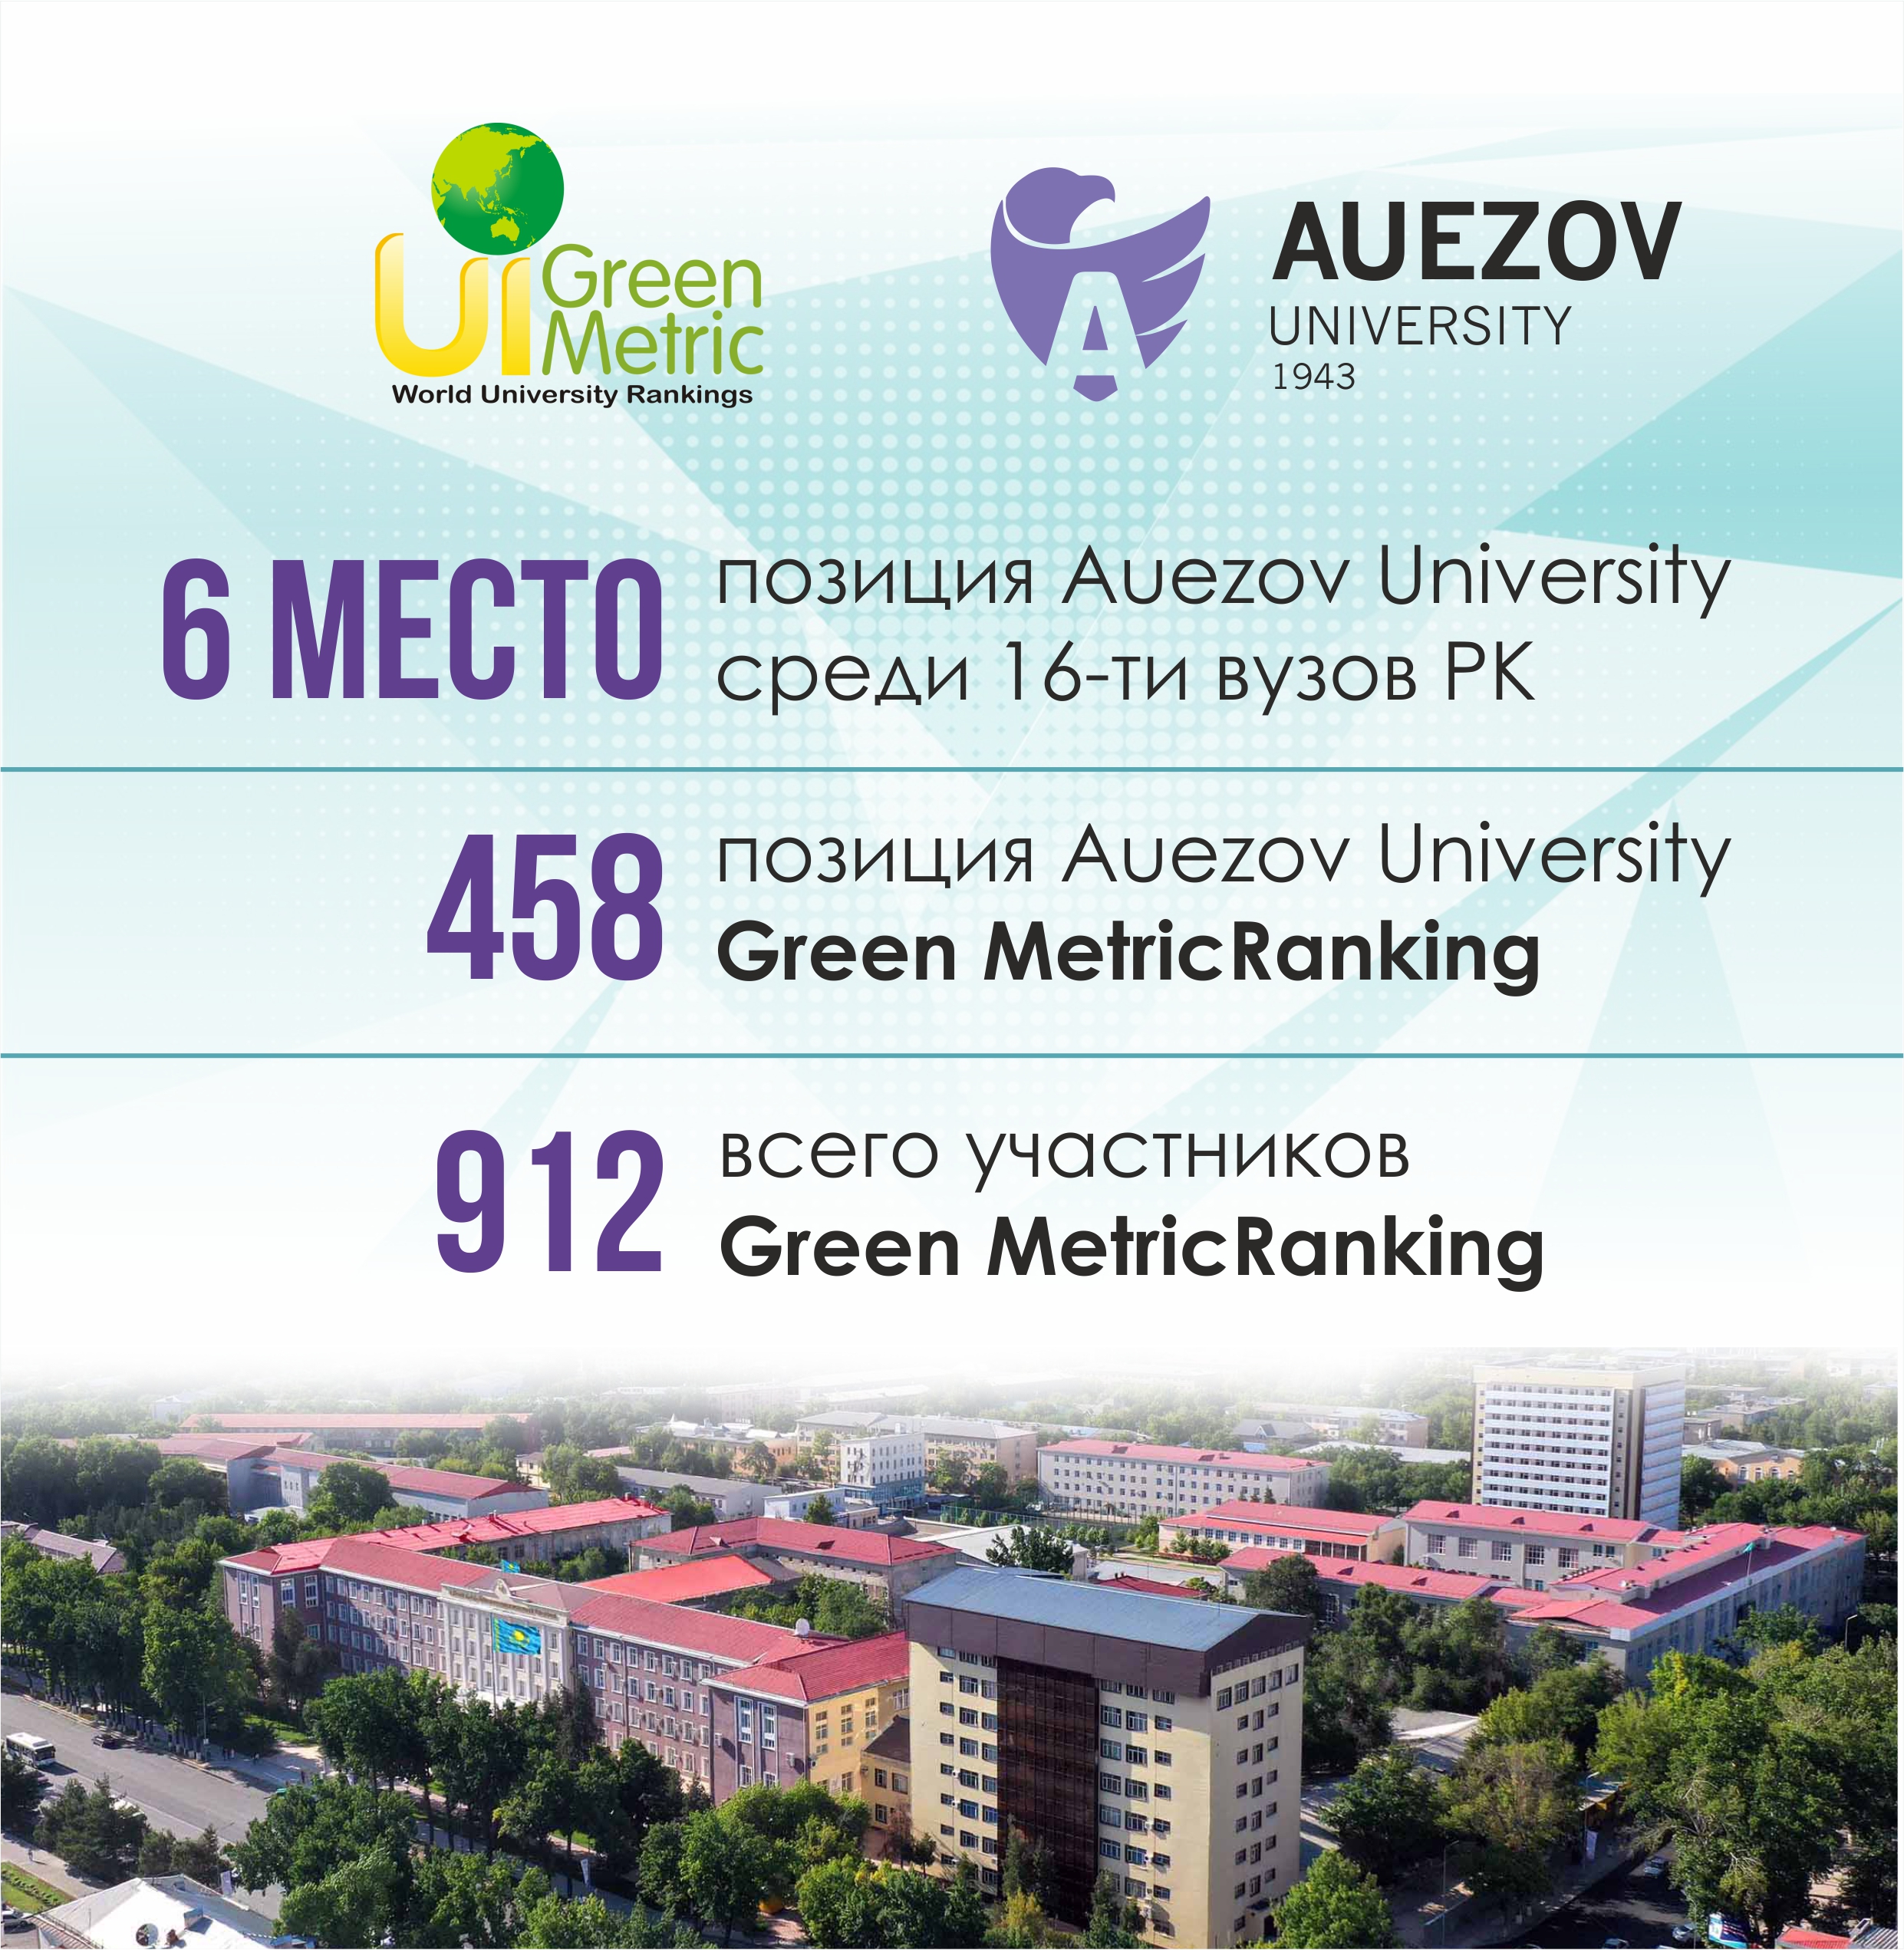 Уважаемые сотрудники и студенты  Южно-Казахстанского университета им. М.Ауэзова!           Мы рады сообщить, что наш университет в уходящем году впервые принял участие во всемирном рейтинге университетов UI Green Metric World University Rankings и вошел в